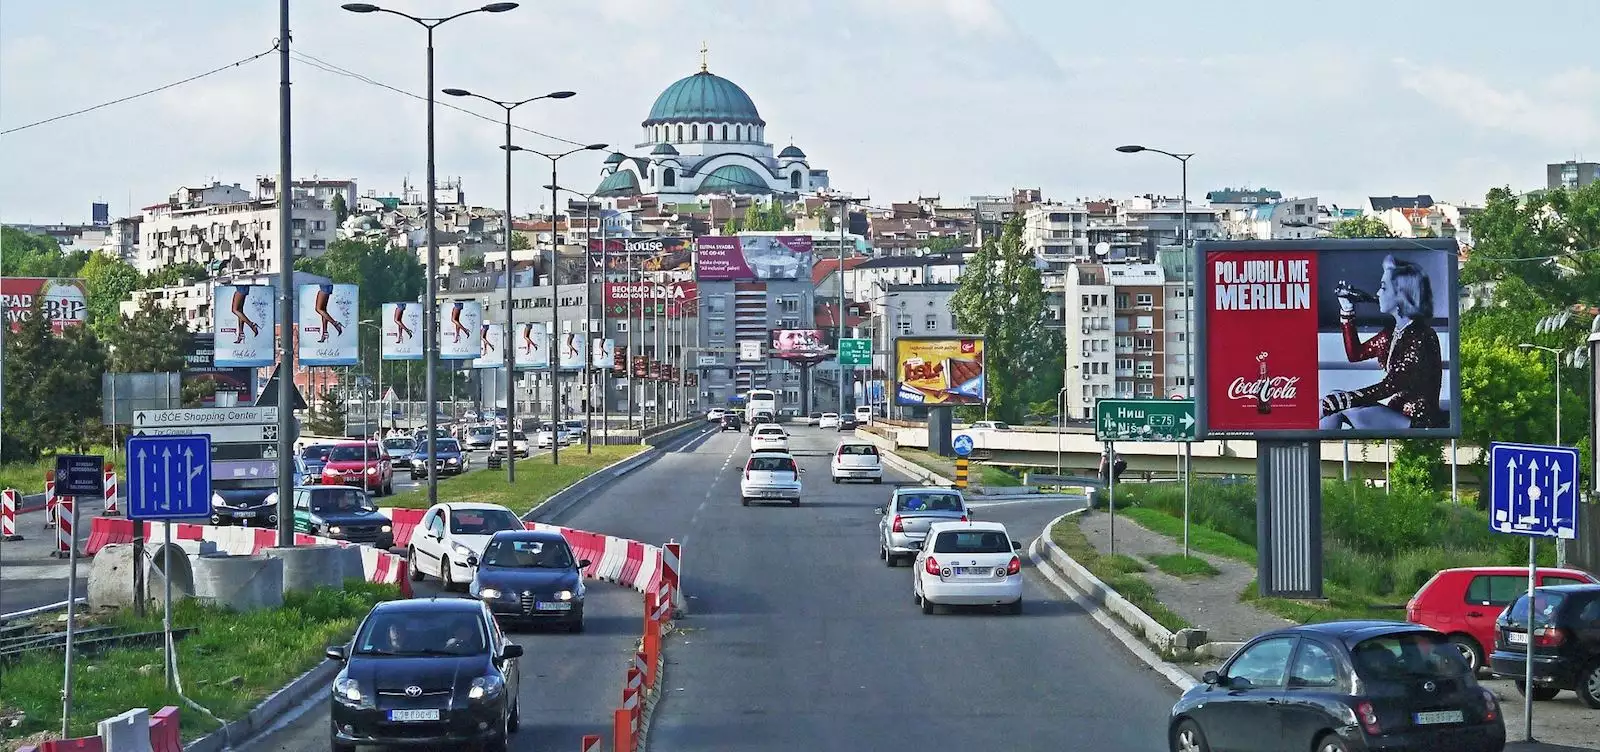 New parking zone in Belgrade